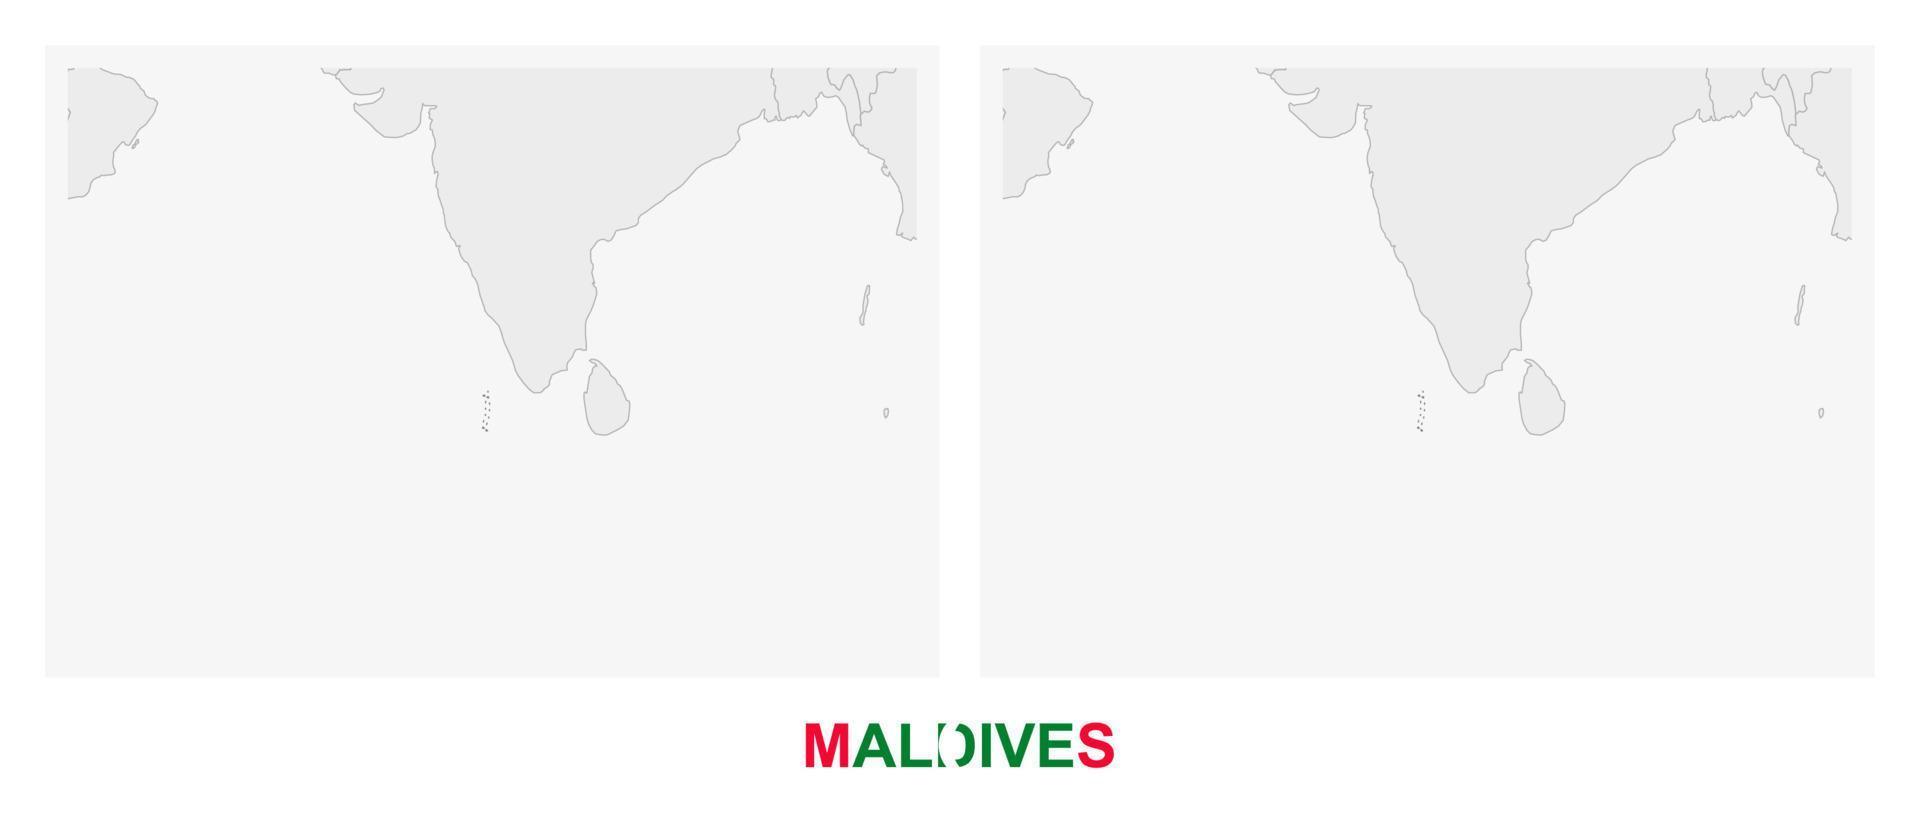 dos versiones del mapa de maldivas, con la bandera de maldivas y resaltada en gris oscuro. vector